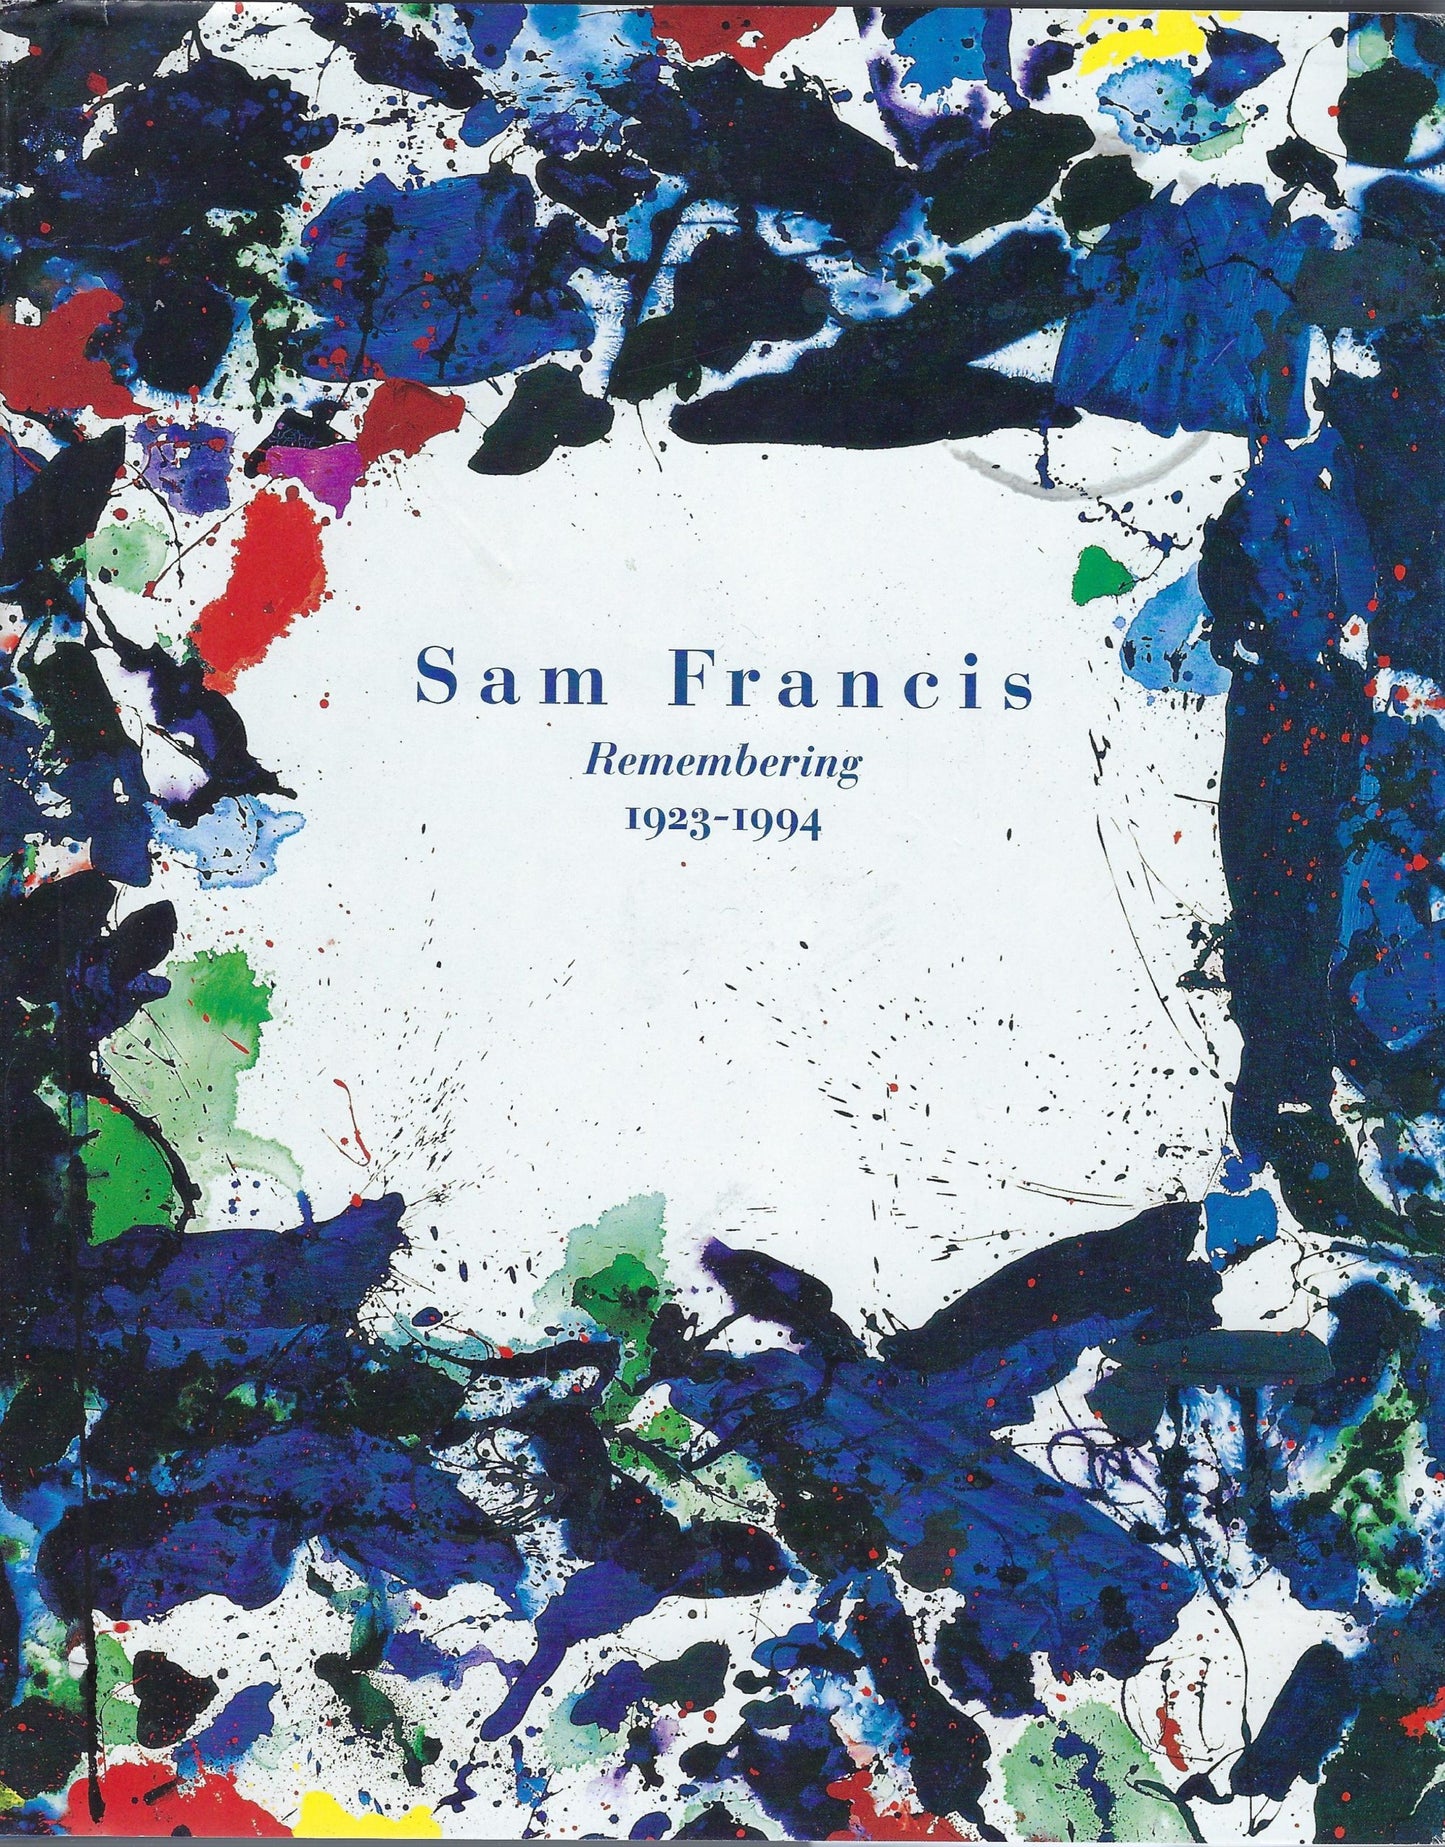 Sam Francis remembering 1923-1994